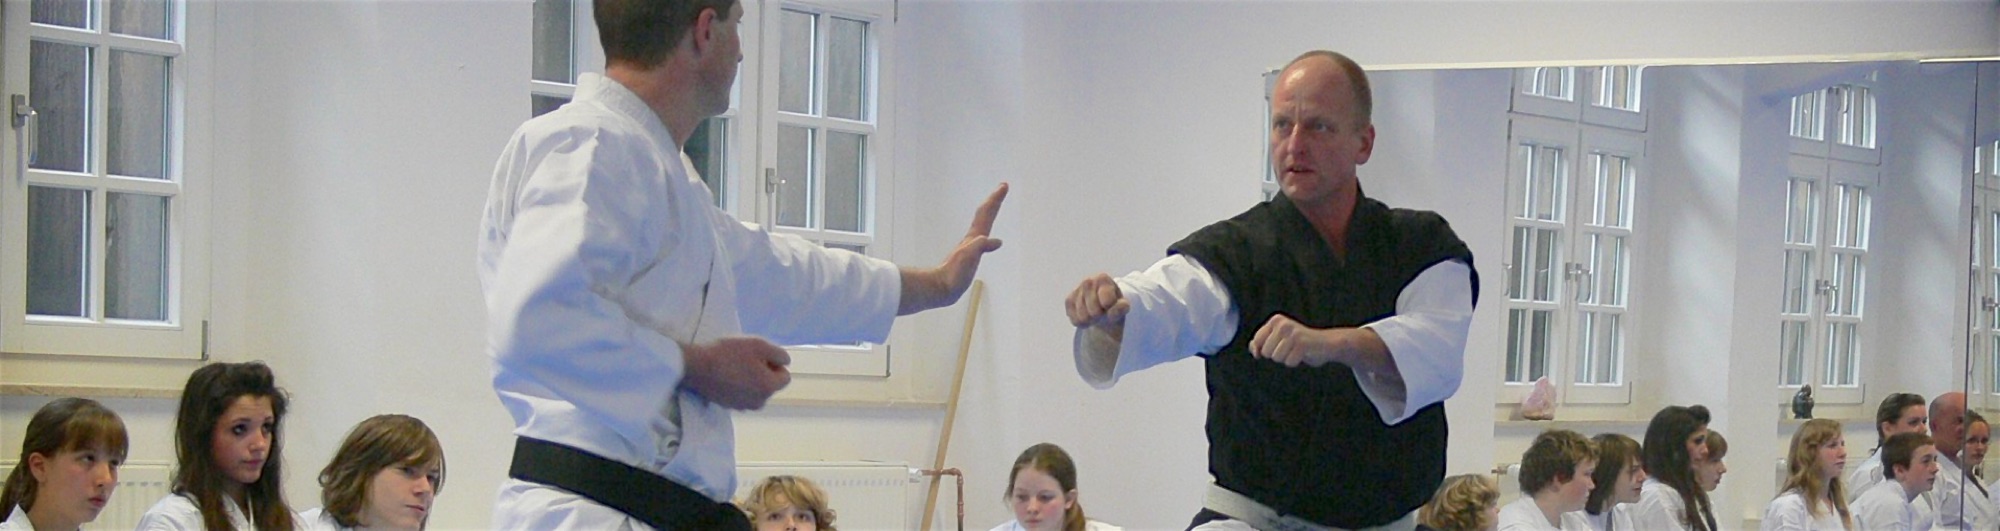 Zwei Karate Kampfkünstler stehen sich aufmerksam gegenüber